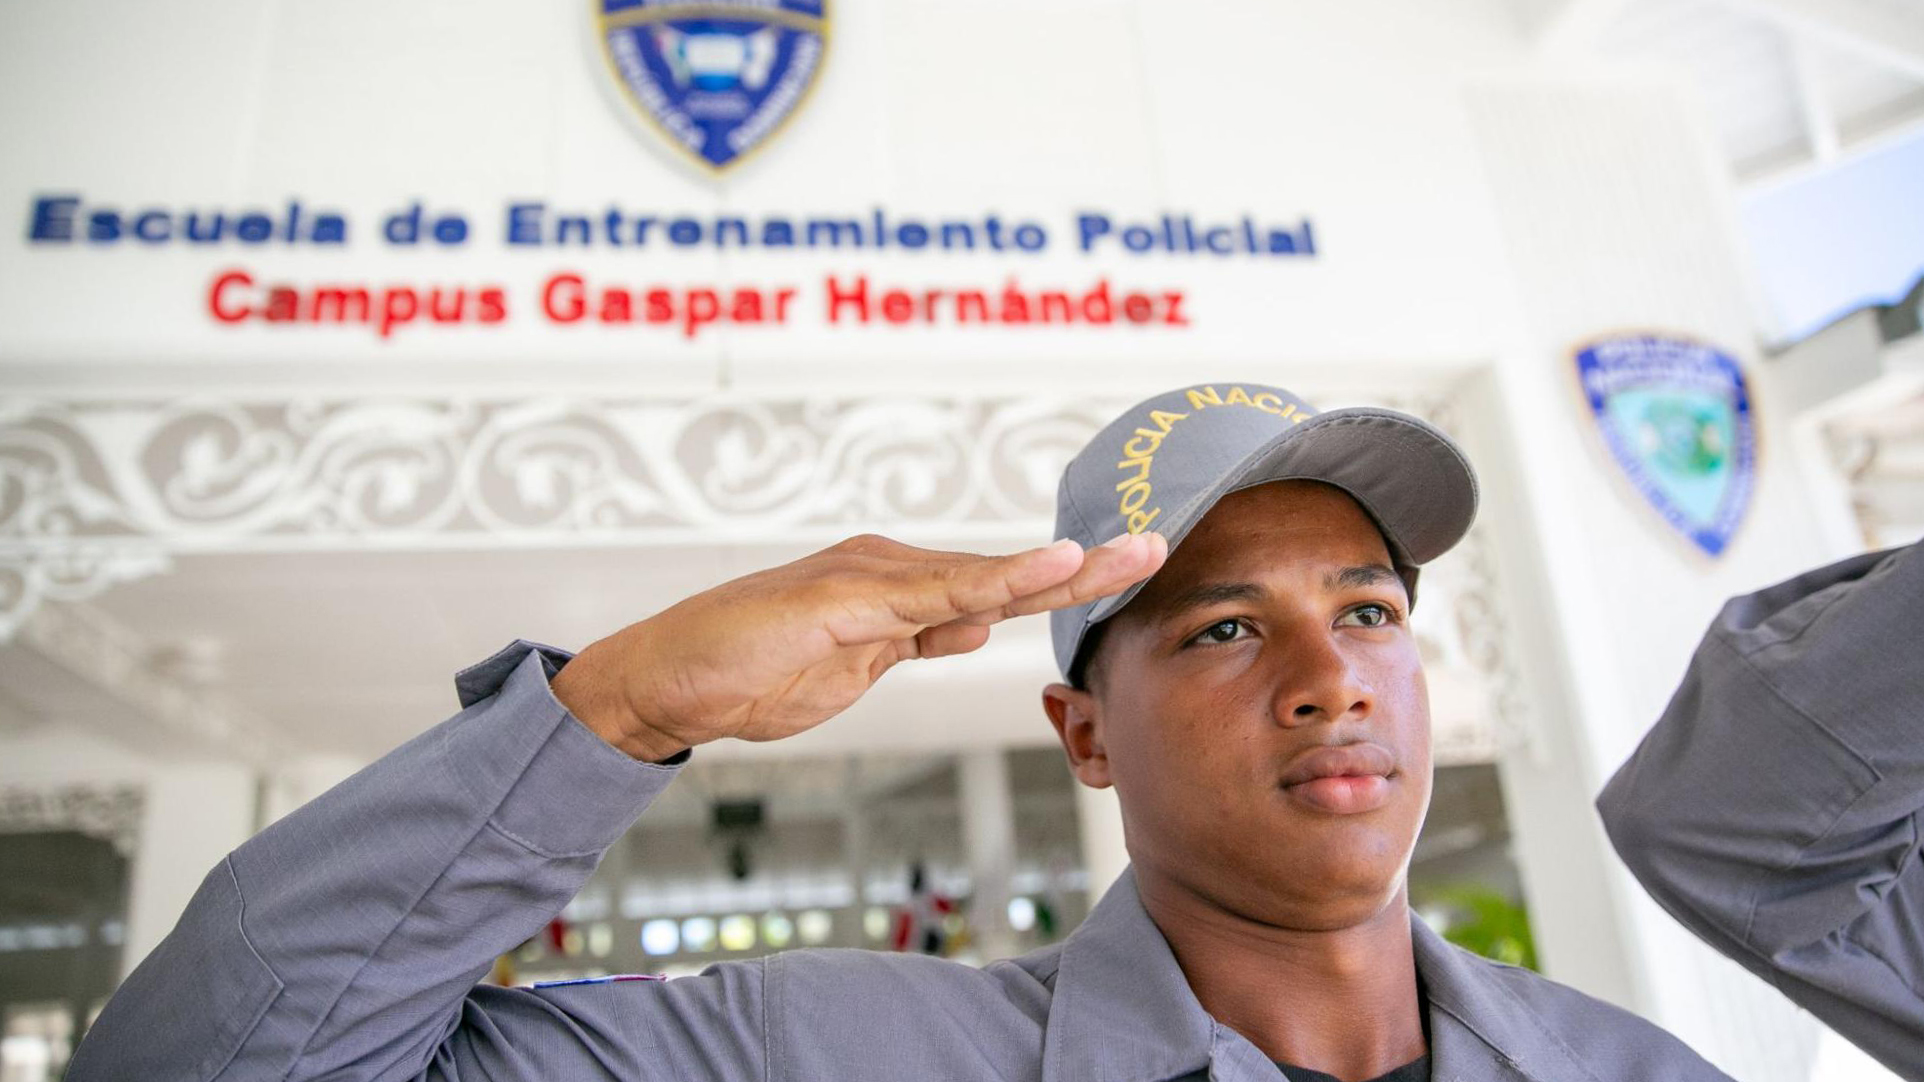 Policia Nacional, Reforma Policial